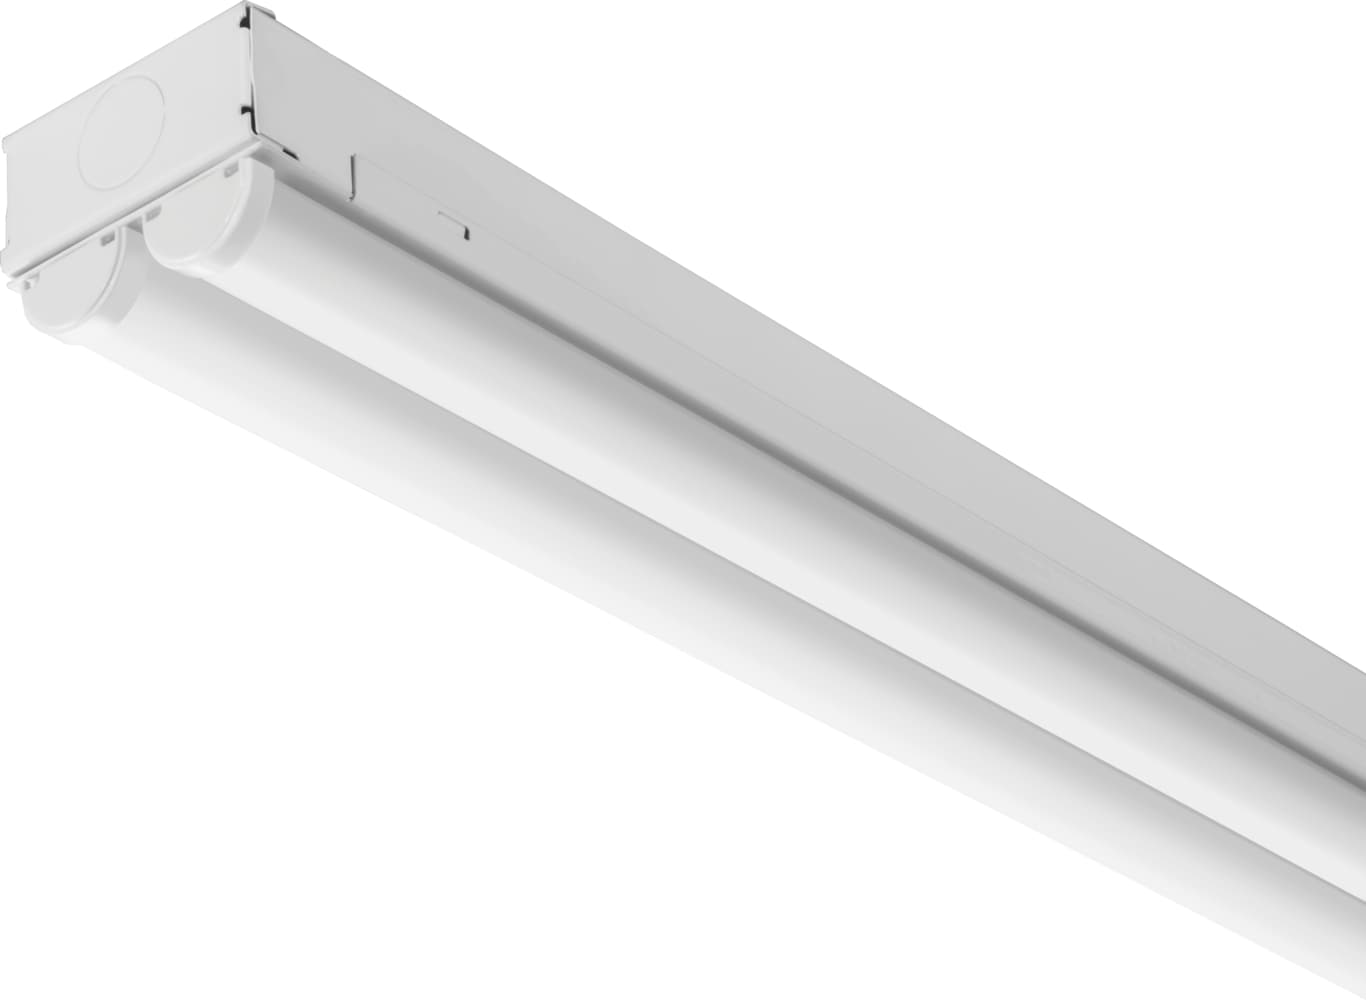 Lithonia Lighting 4-ft 2-Light Cool White LED Strip Light